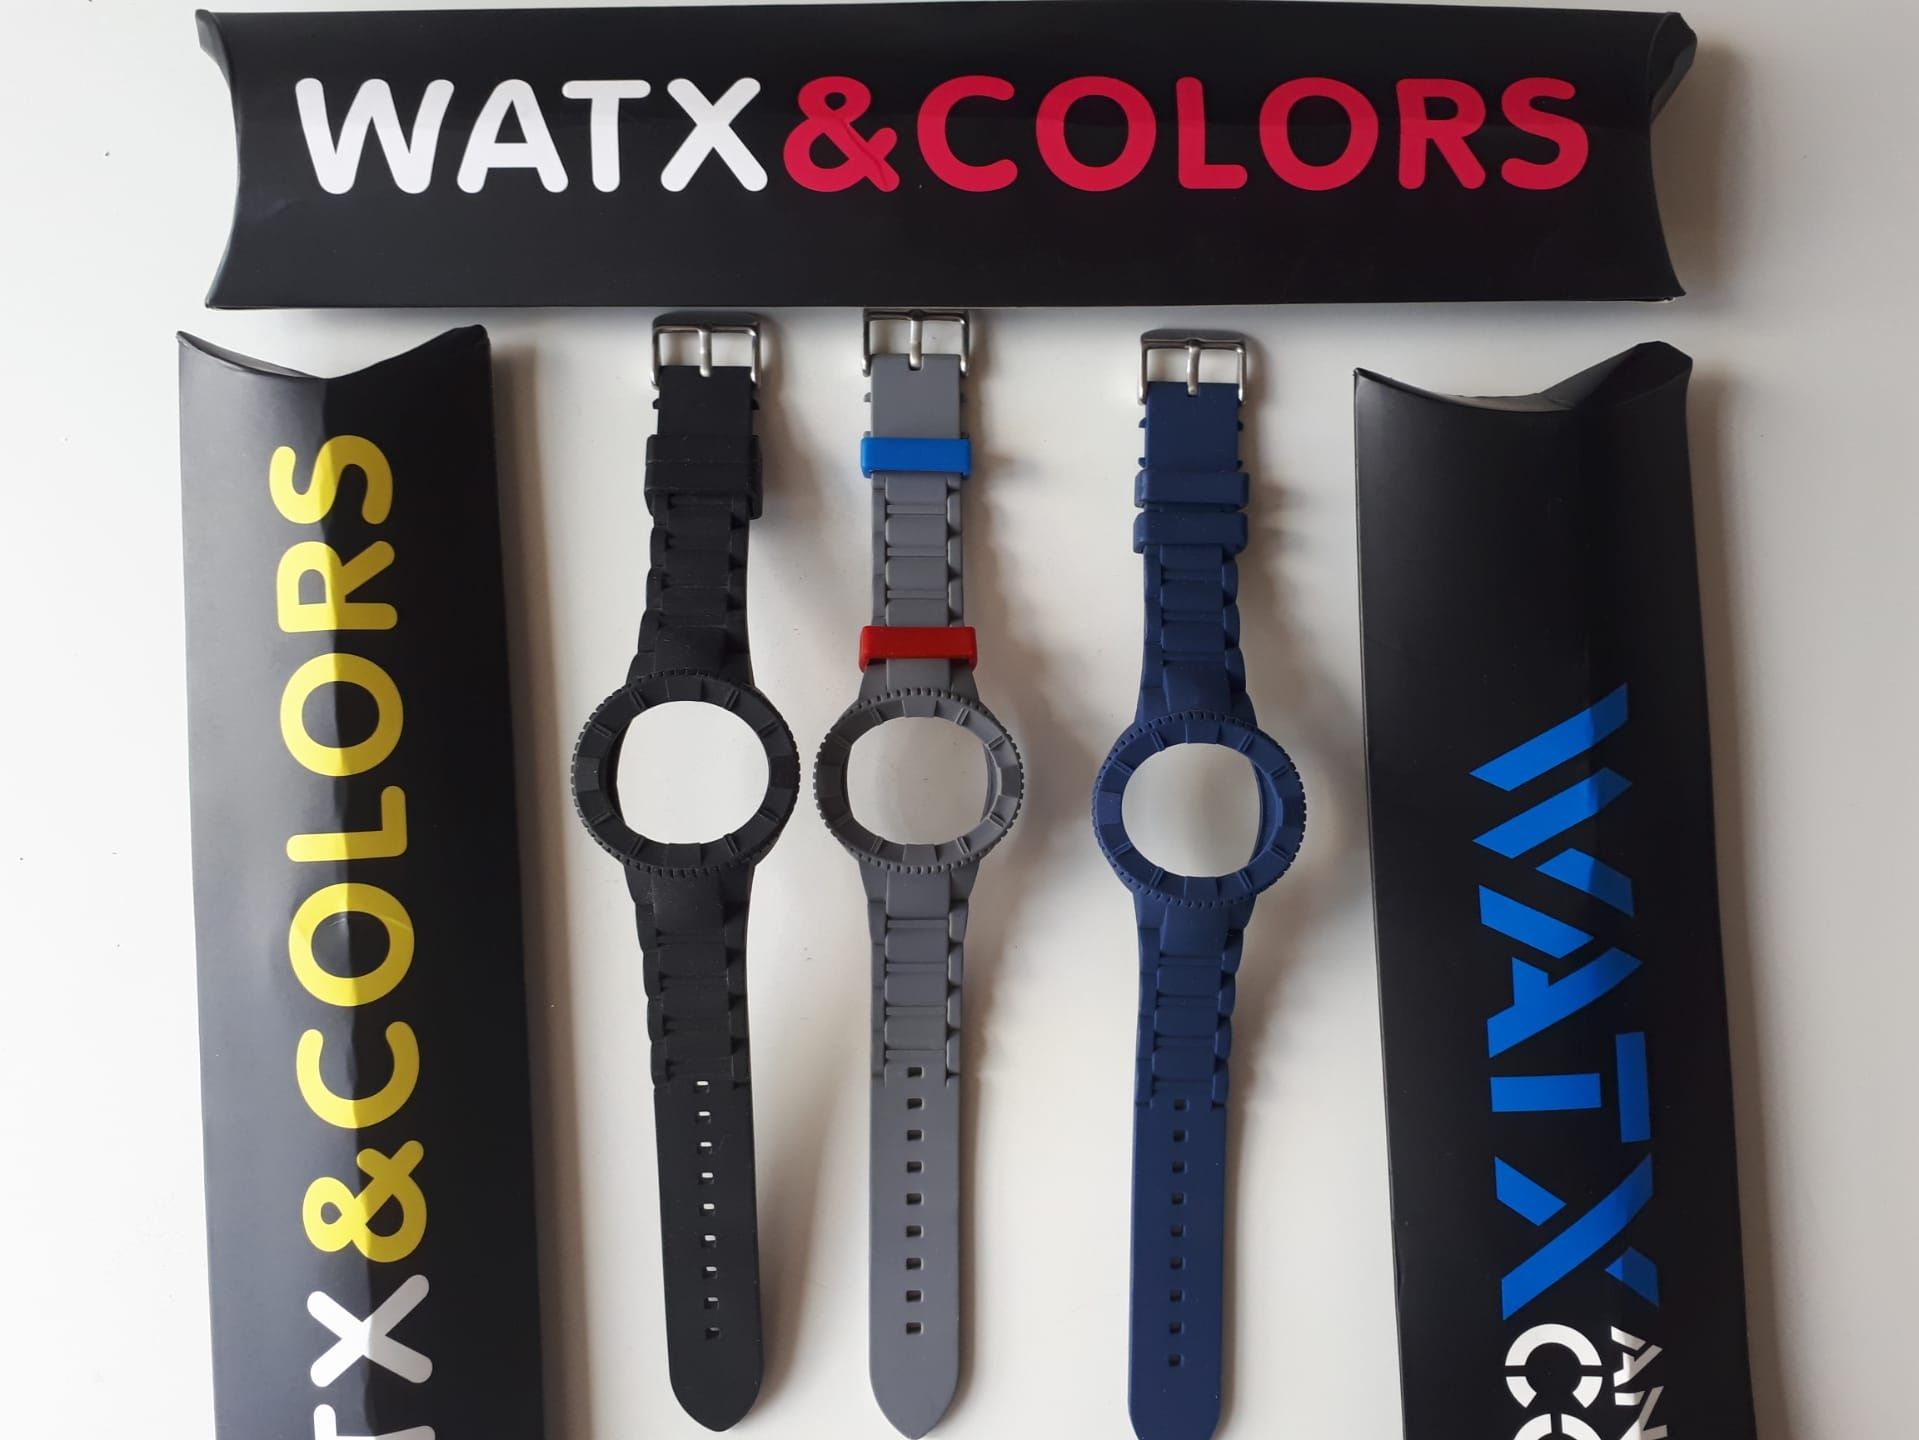 Braceletes novas WATX, tamanho M, de várias cores e modelos, com caixa